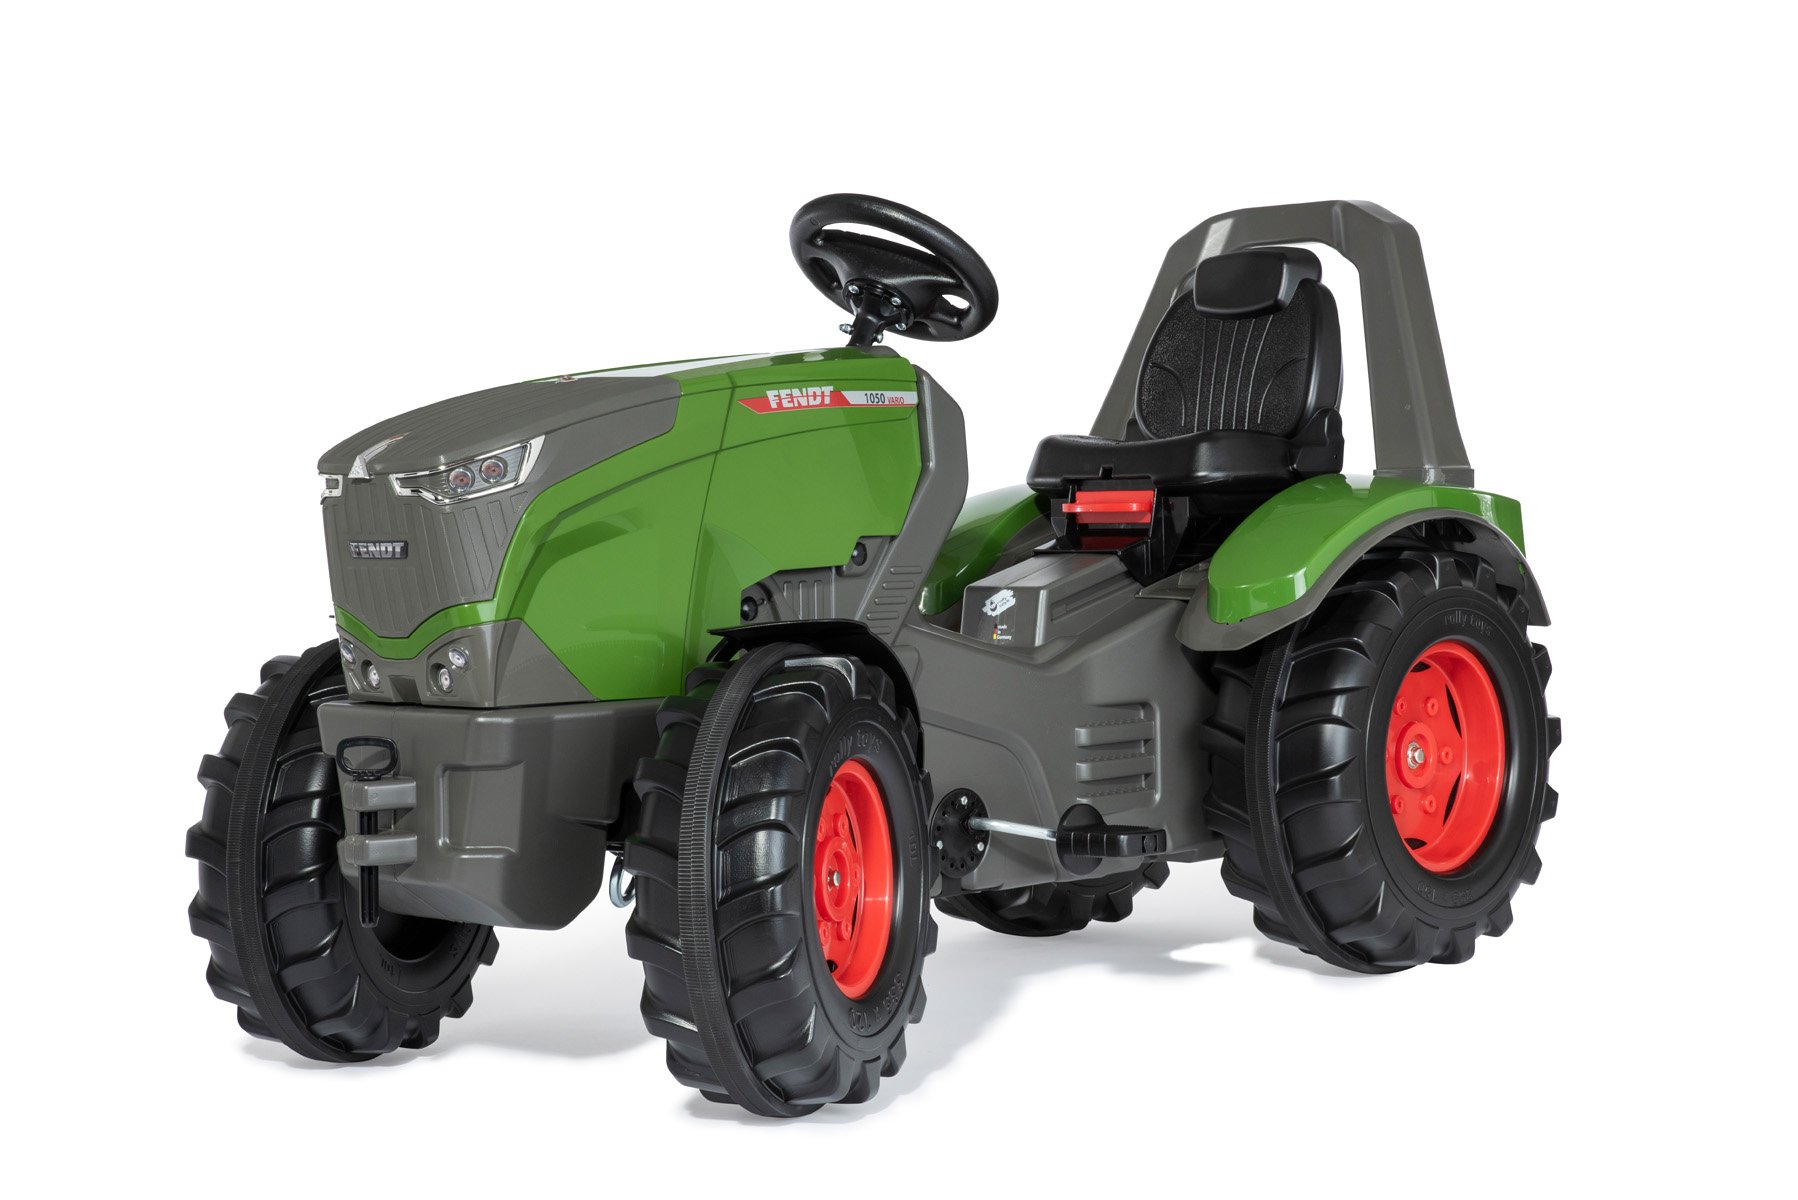 Tracteur Rolly Toys sans pédale 1er age